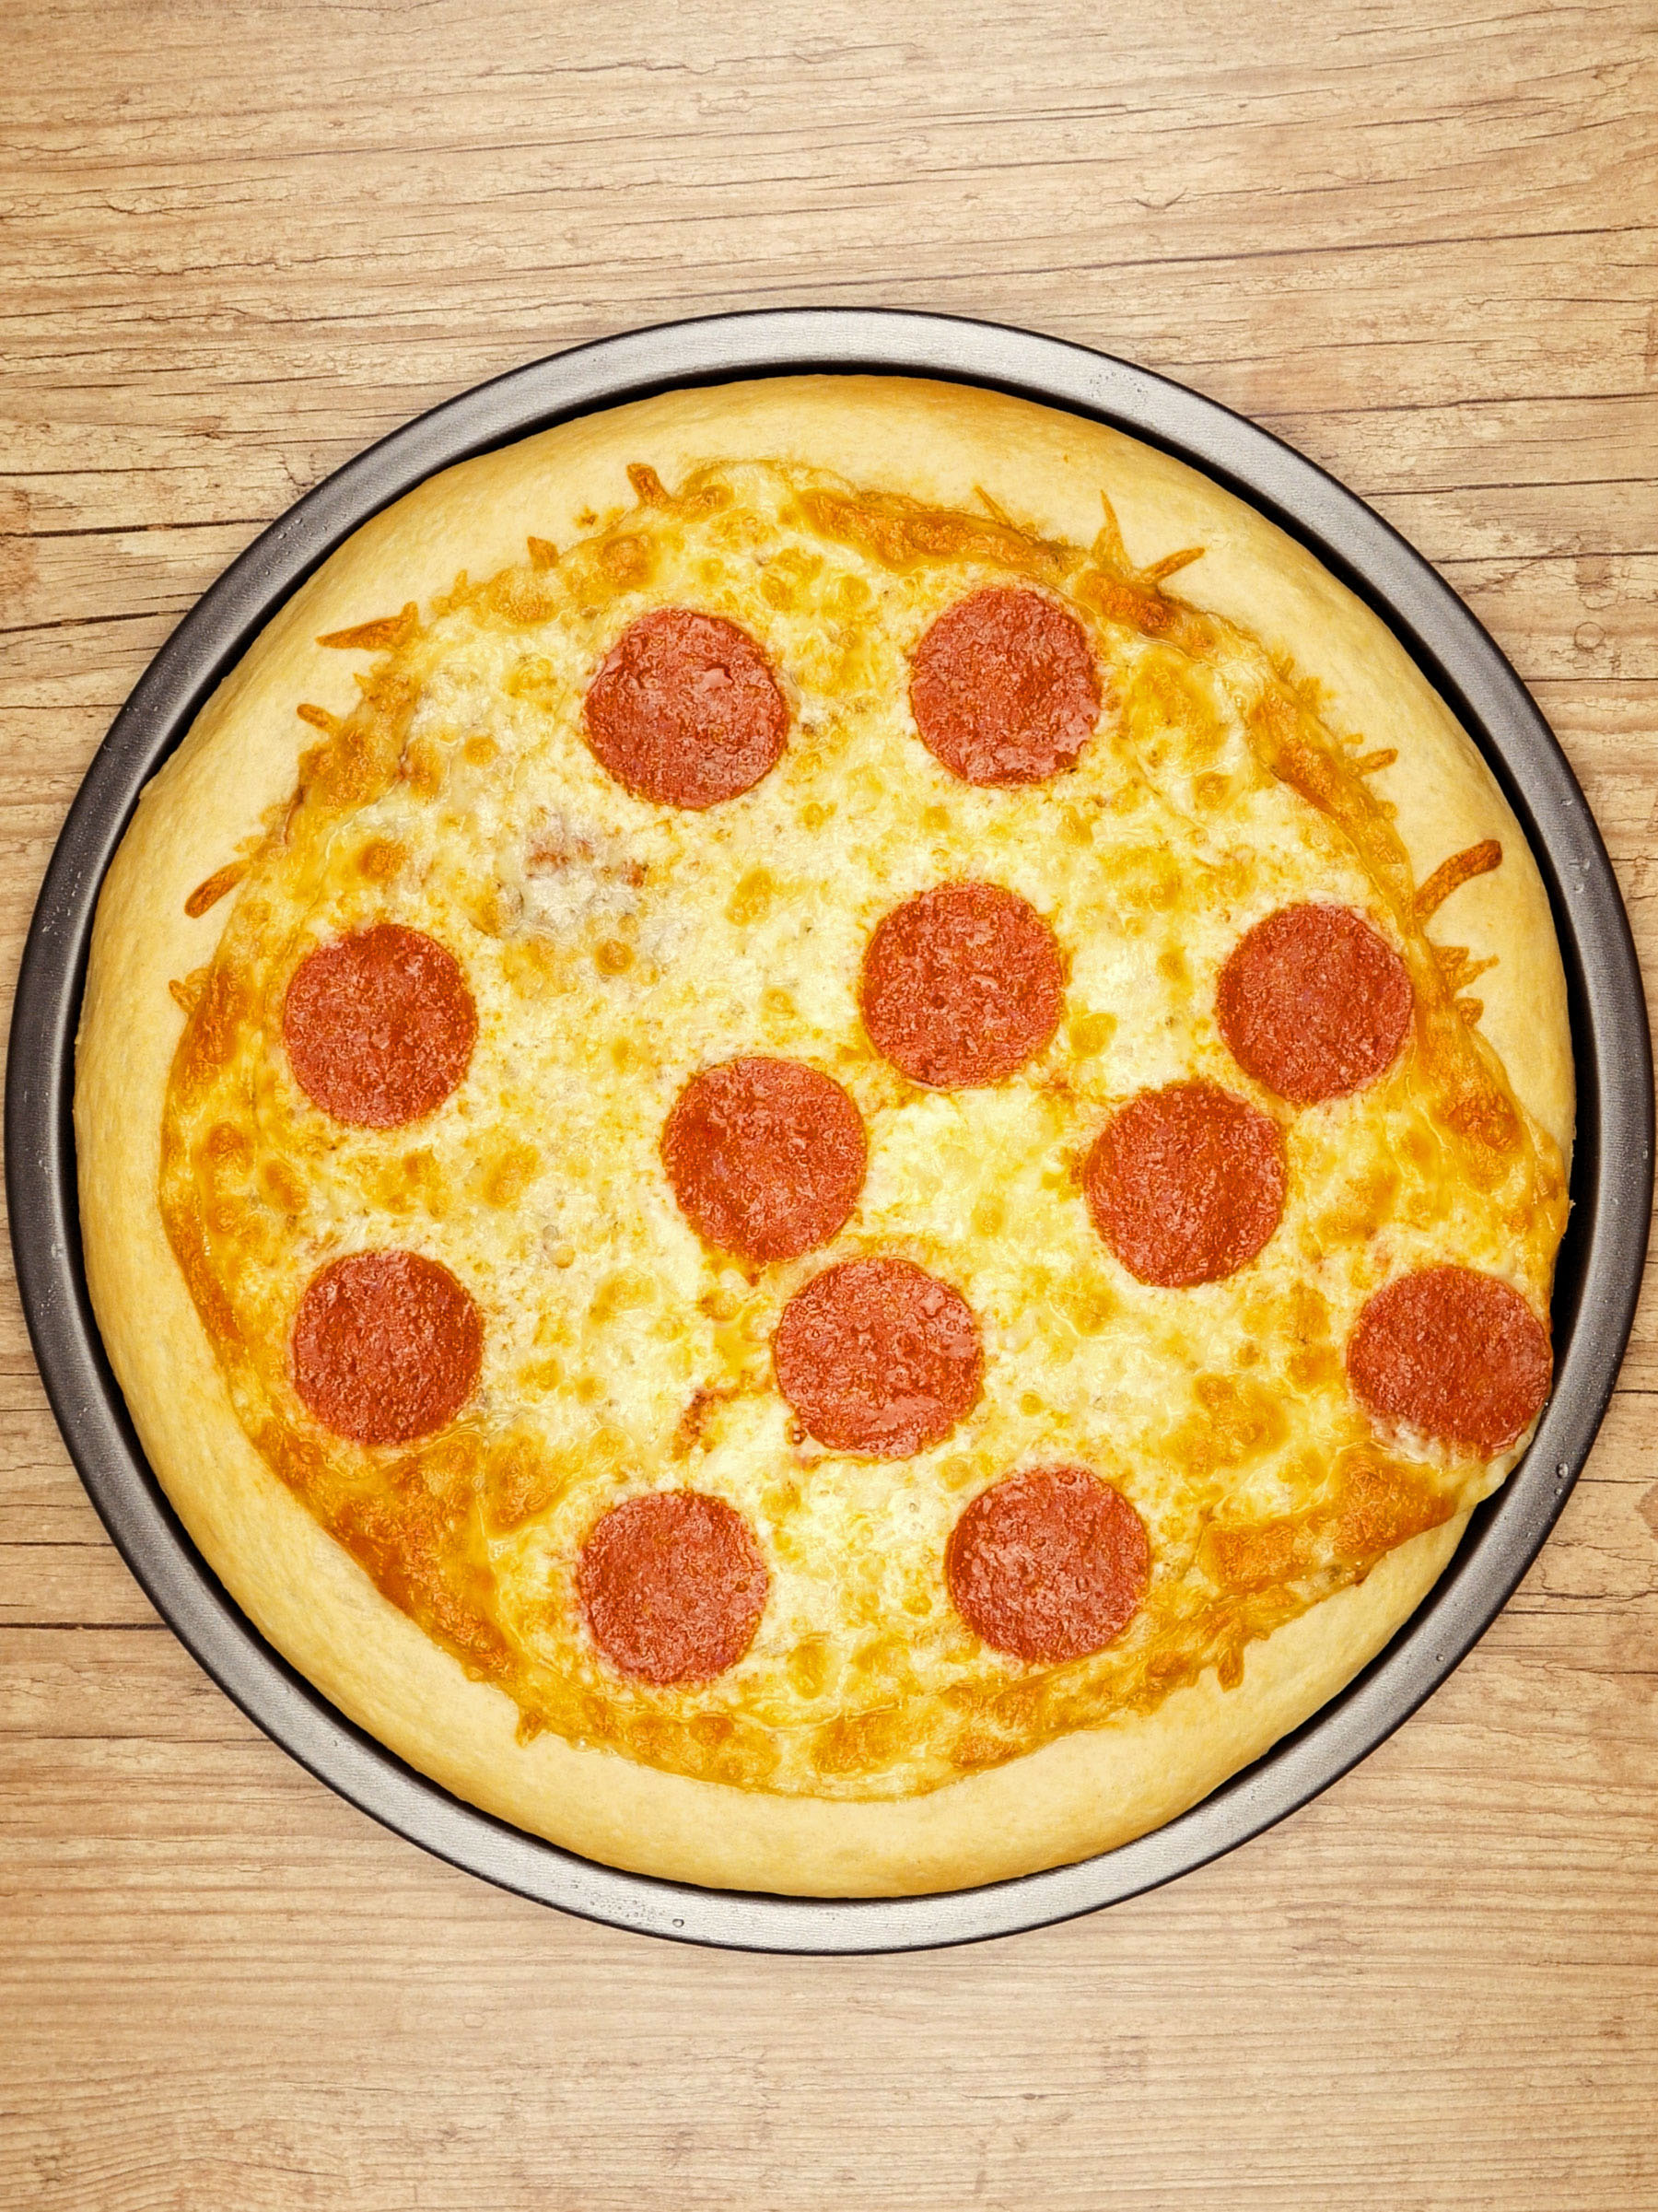 Super Pizza Pan - Se você ama hambúrguer, molho barbacue e queijo, essa  pizza é pra você! Cheia de sabor e personalidade, no estilo Super Pizza Pan!  😋🍕 #pizzariadelivery #pizzaria #pizzalovers #pizzatime #